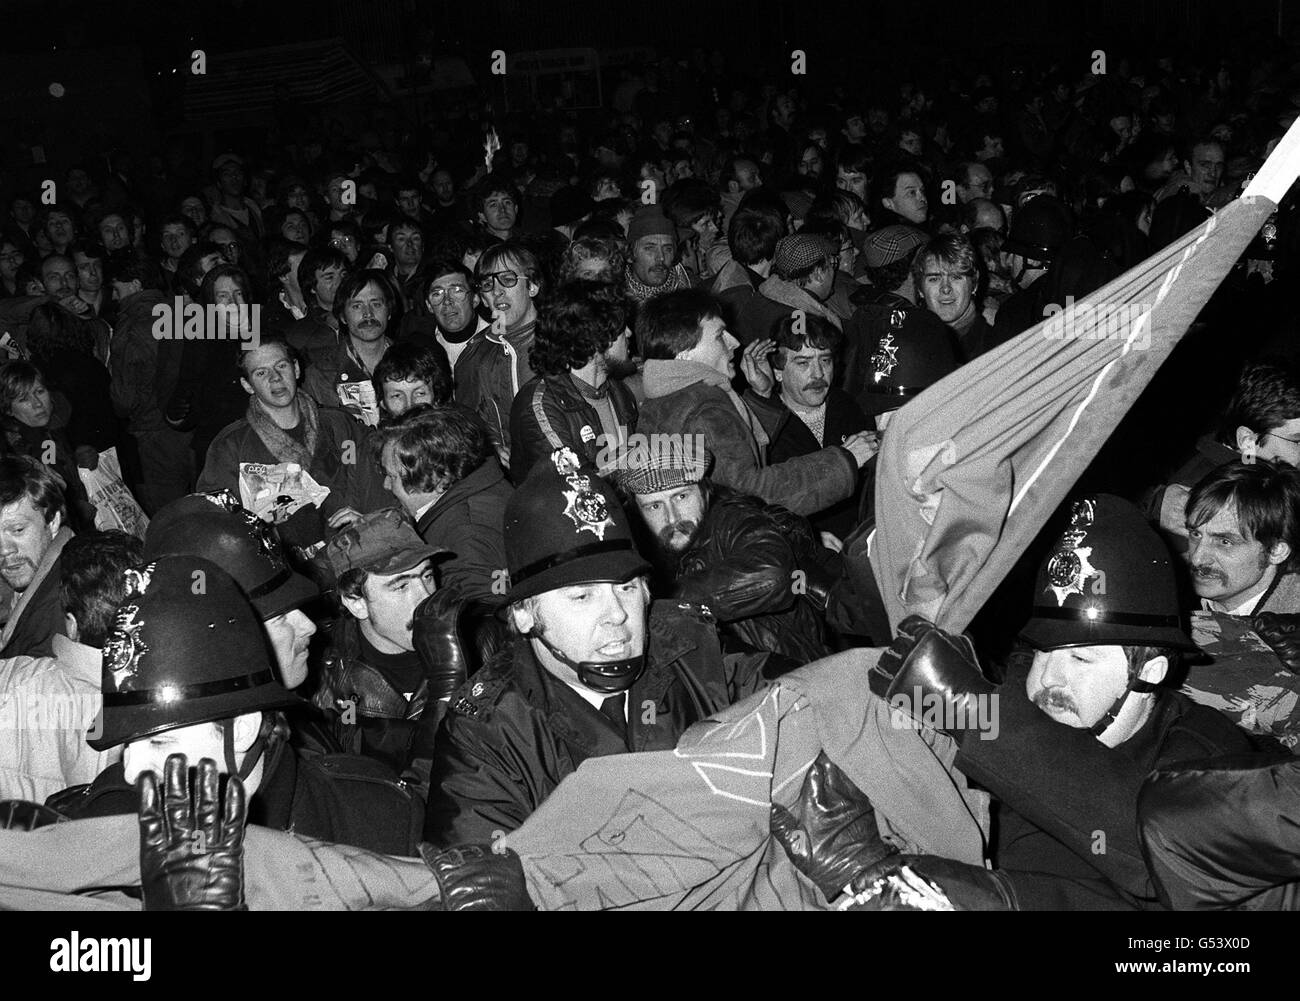 Affrontements entre la police et des manifestants agitant des banderoles au cours de troubles à l'extérieur des œuvres imprimées du Messenger Group of Newspapers à Warrington, Cheshire. Banque D'Images